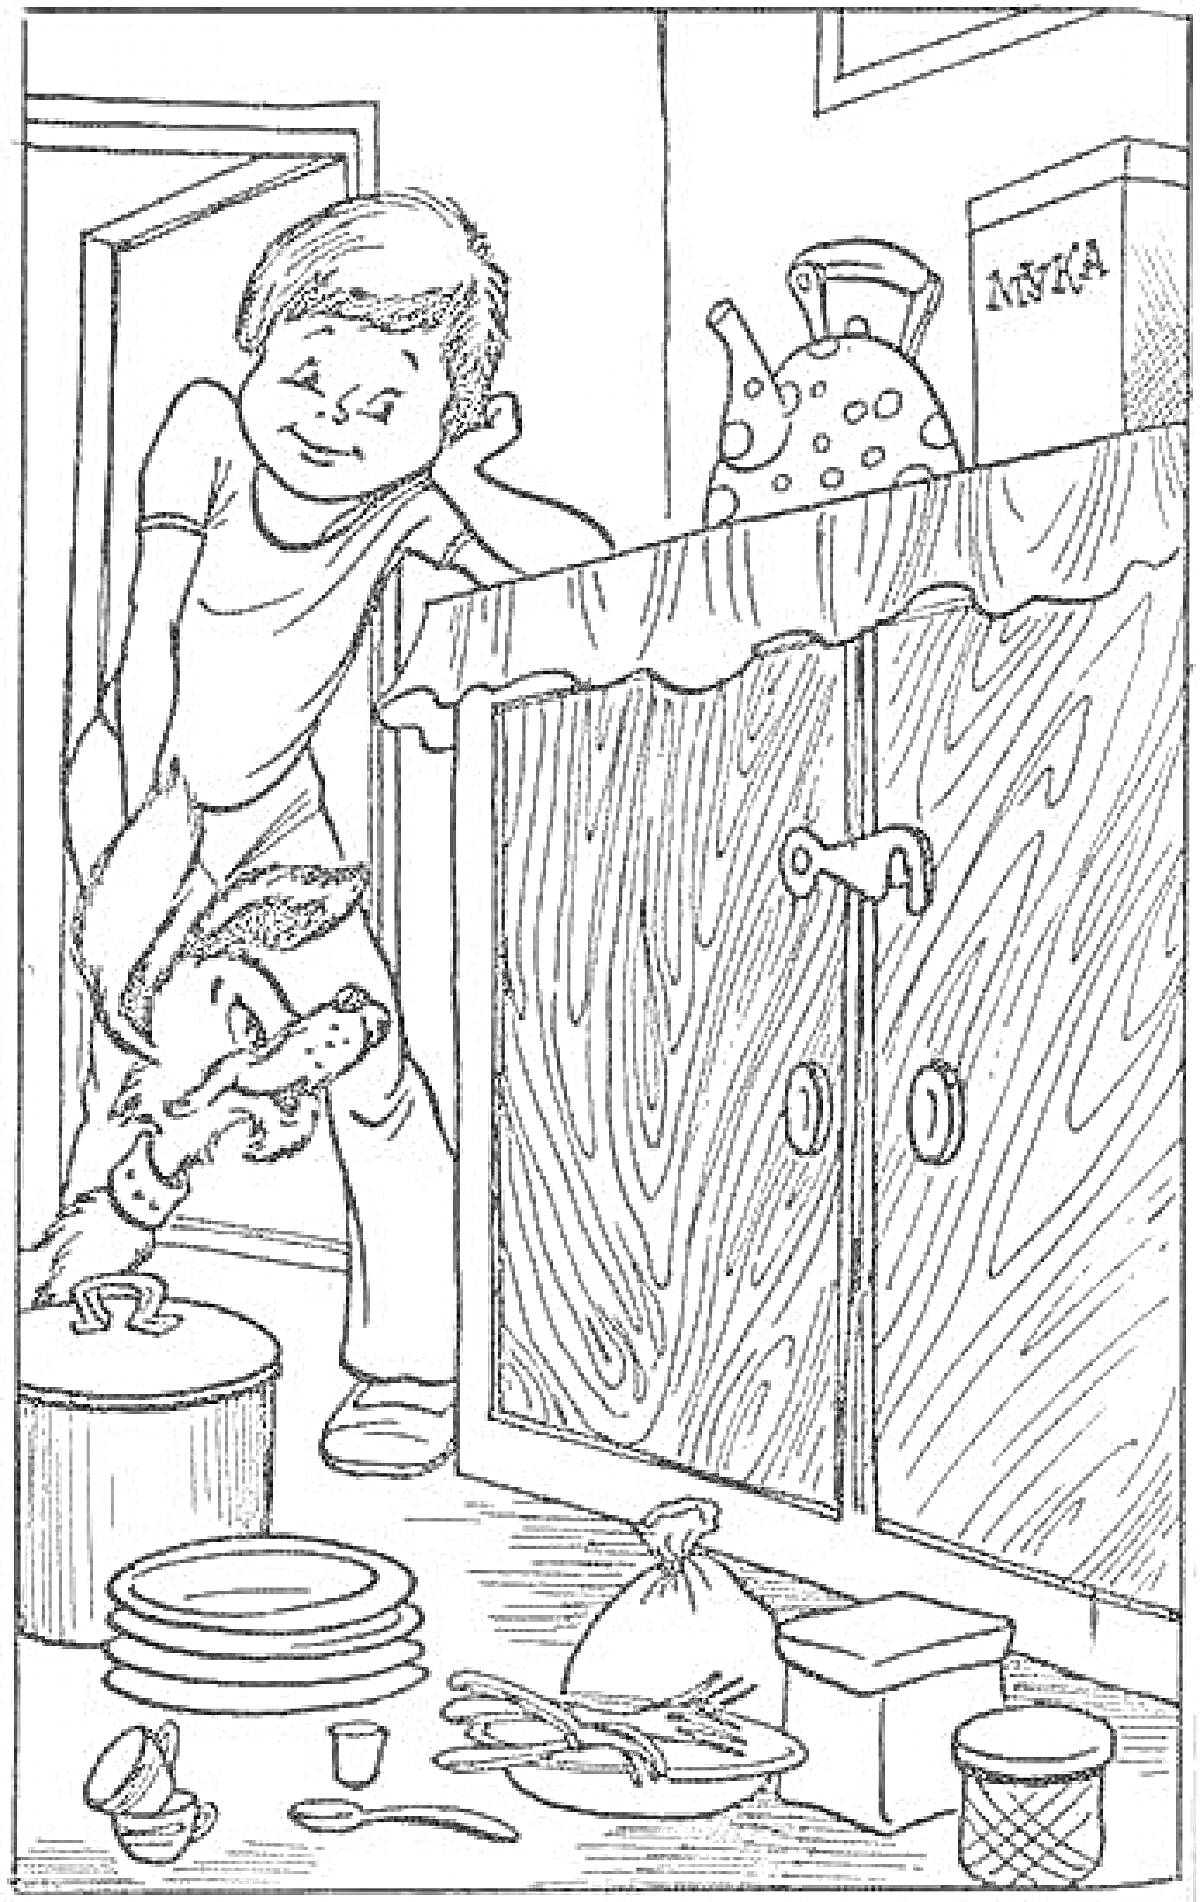 Раскраска Мальчик с собакой на кухне возле упавших кухонных принадлежностей: кастрюля, крышки, тарелки, щётка, мешок с мукой, коробка с мукой, кувшин